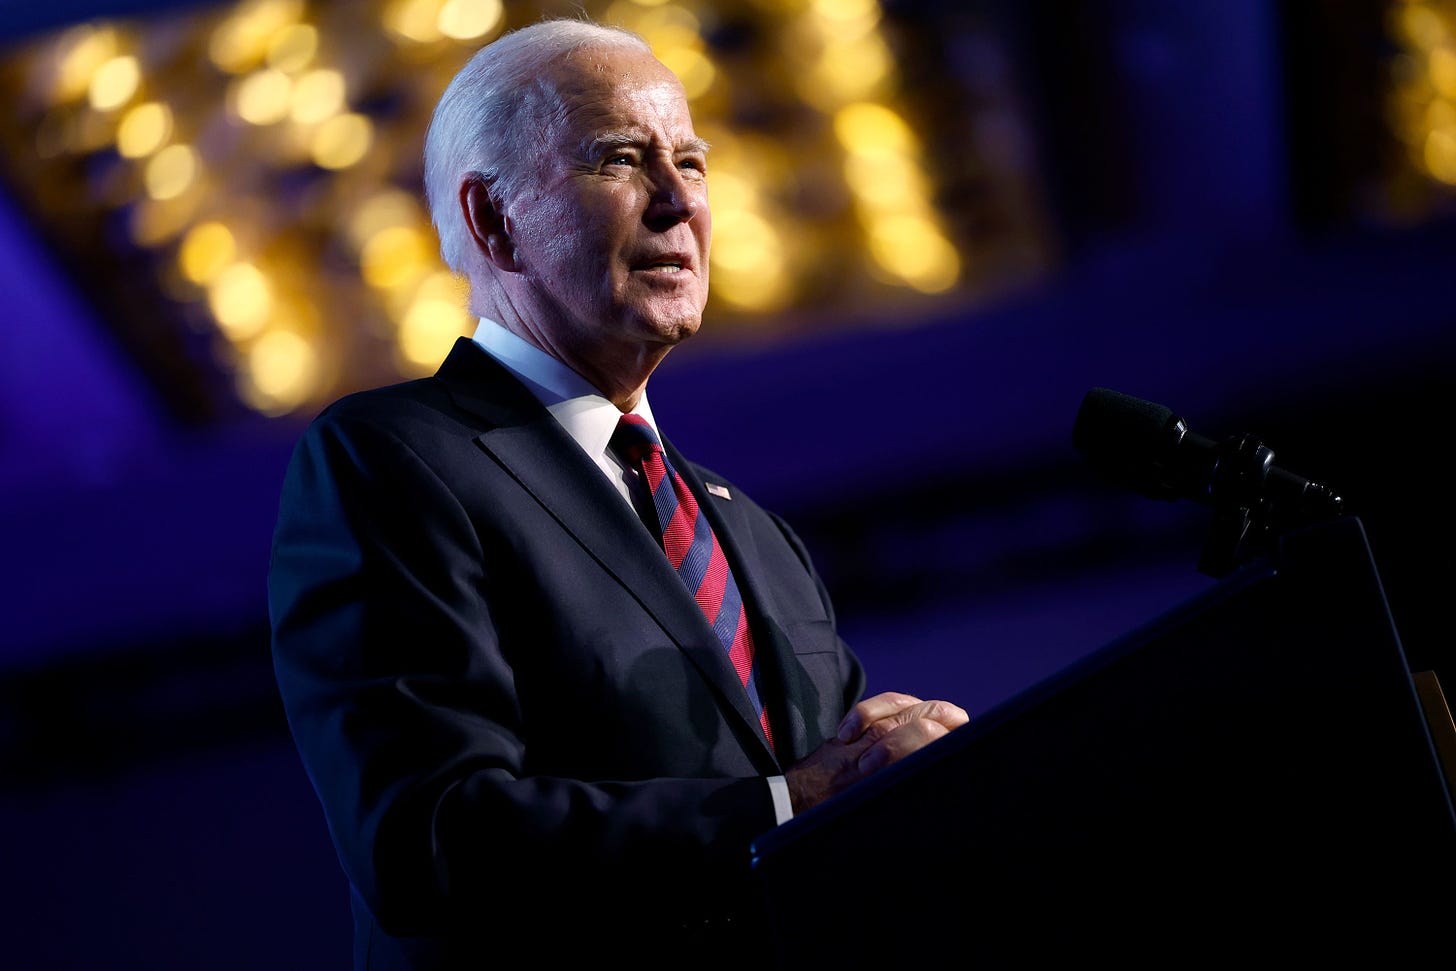 Another Biden business associate says Joe Biden was not involved in foreign  business dealings | CNN Politics